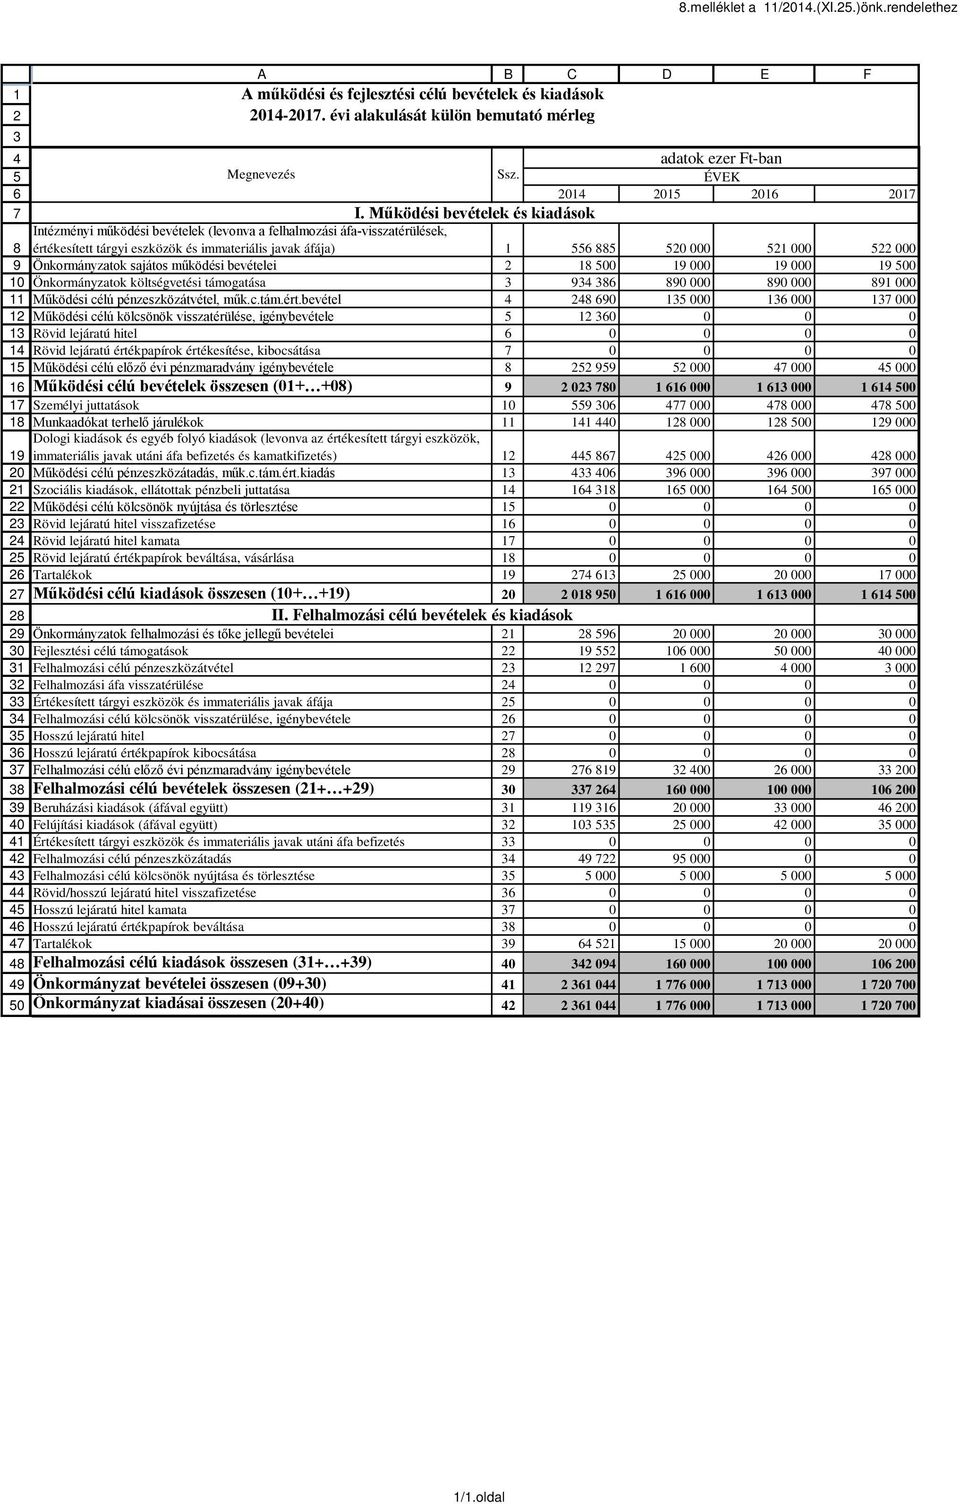 Működési bevételek és Intézményi működési bevételek (levonva a felhalmozási áfa-visszatérülések, értékesített tárgyi eszközök és immateriális javak áfája) 1 0 000 1 000 000 Önkormányzatok sajátos